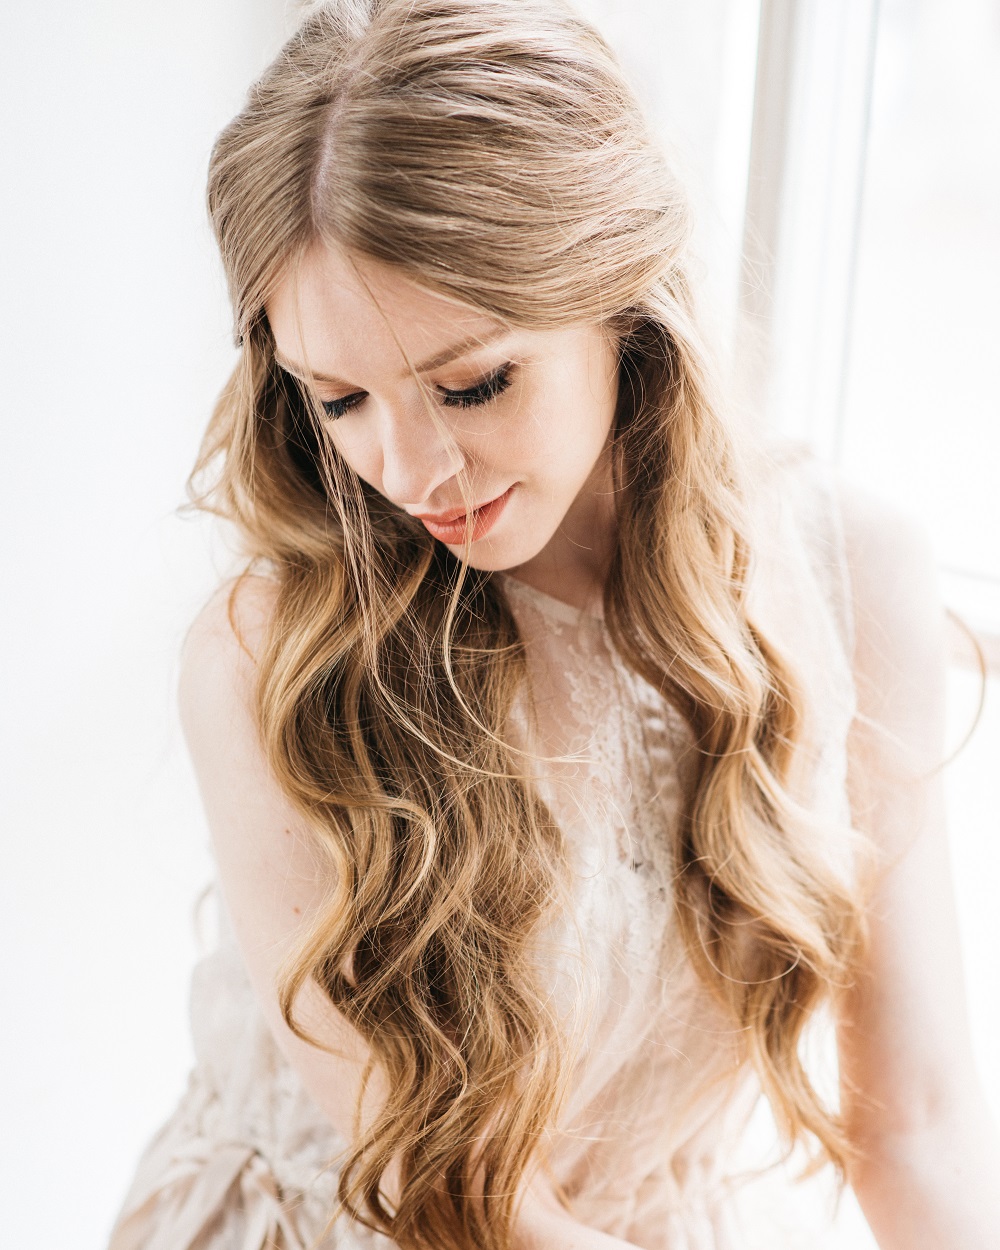 Długie, rozpuszczone włosy jako przykład fryzury na wesele.